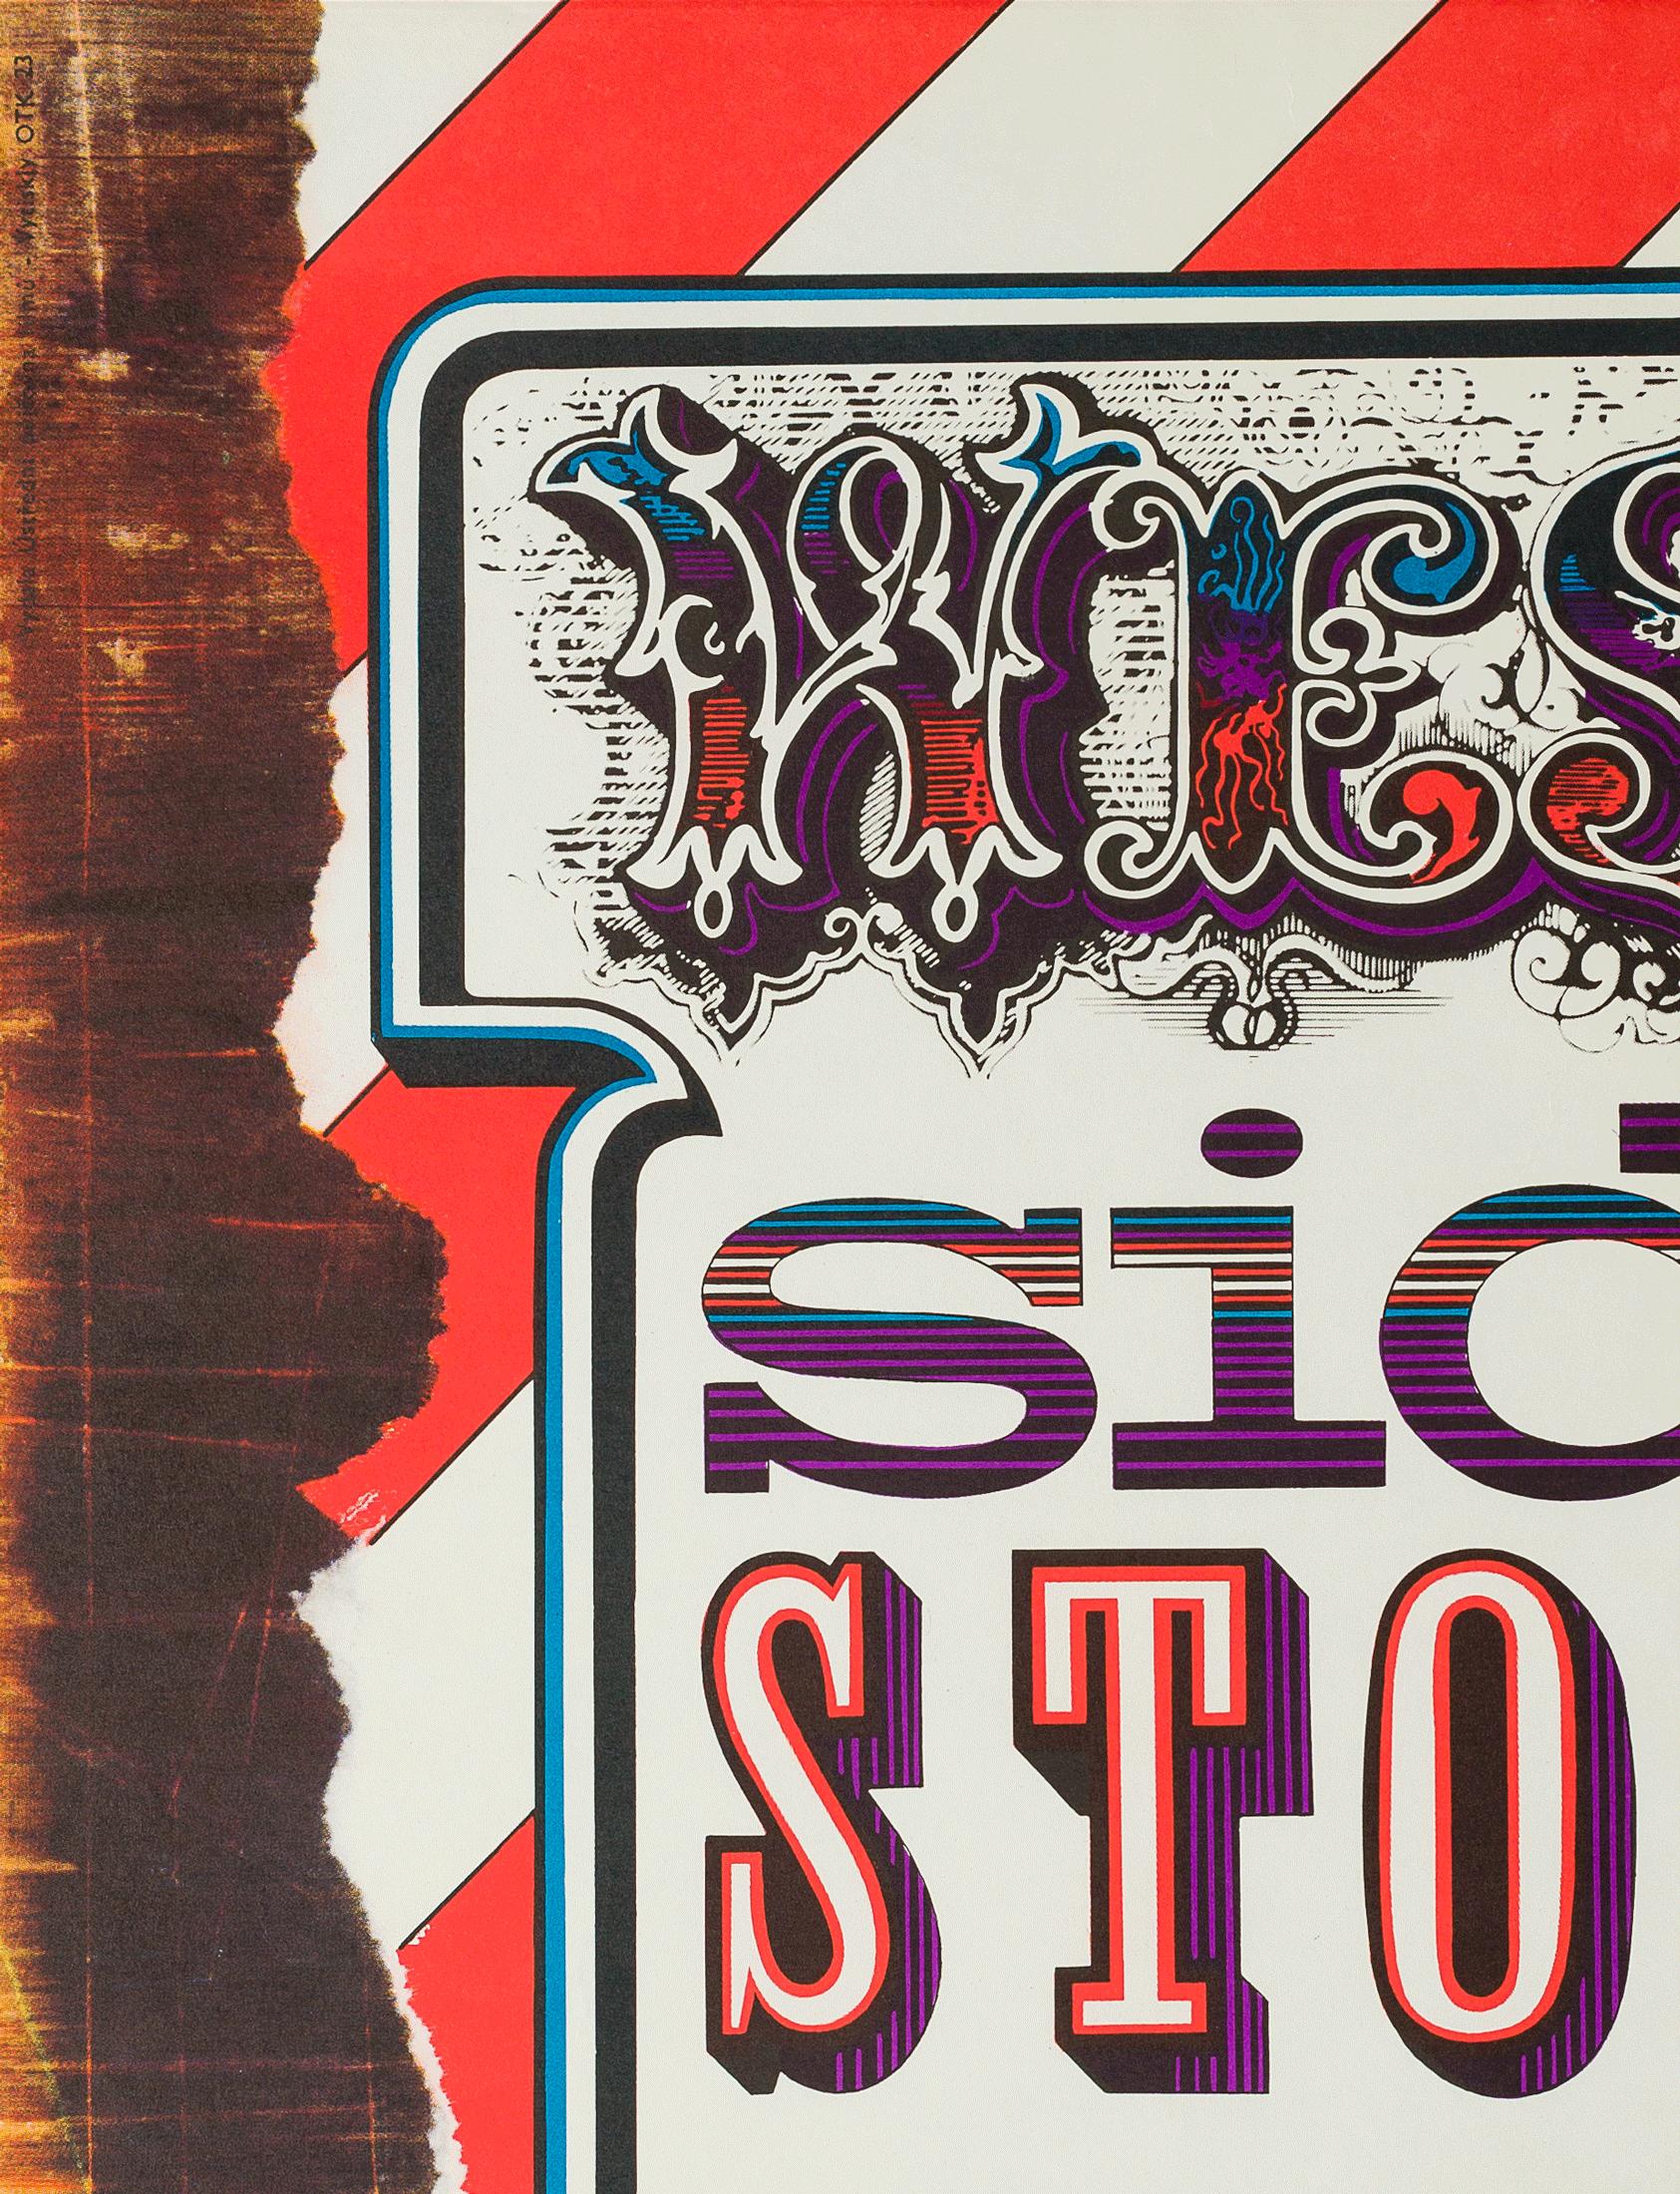 L'illustration alternative figure sur l'affiche de film tchèque vintage de West Side Story. Il s'agit de l'affiche de cinéma plus rare et de plus grand format conçue par Zdenek Ziegler.